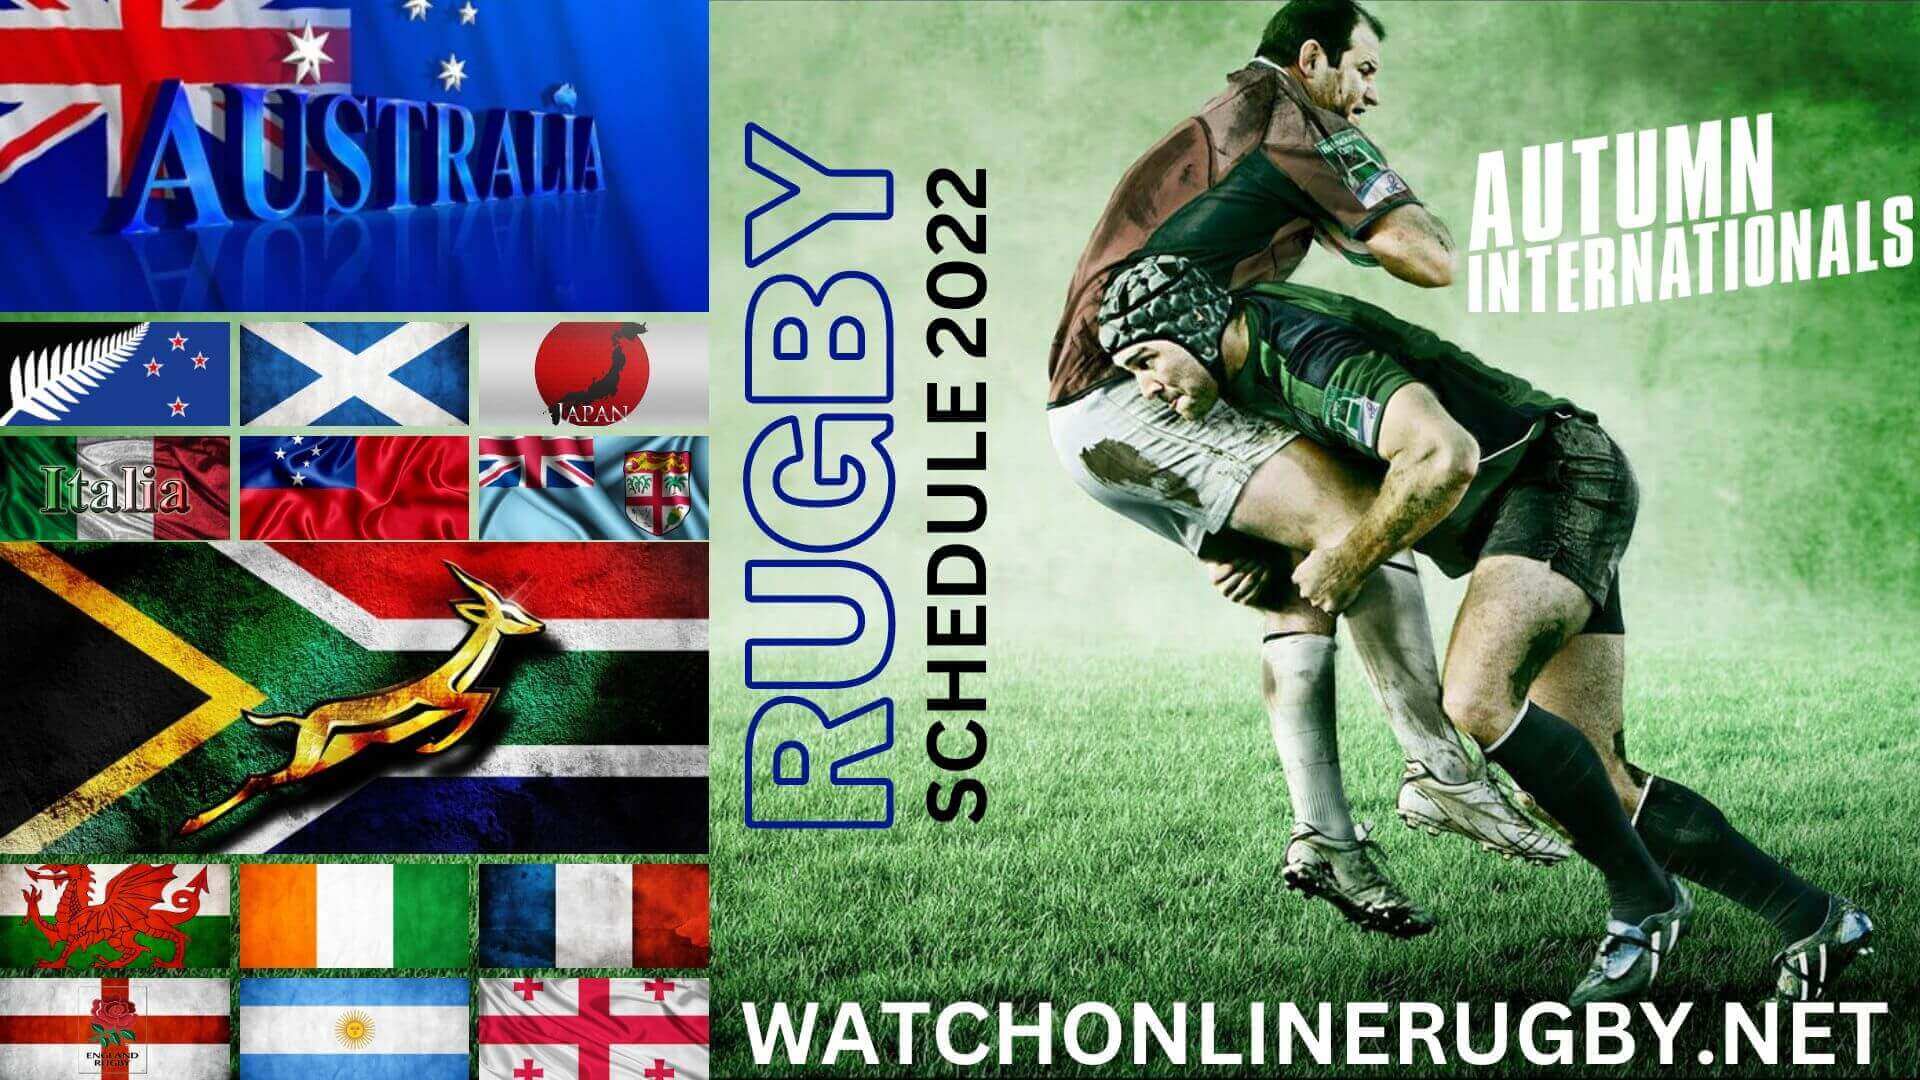 Autumn Internationals Rugby 2021 Schedule Live Stream